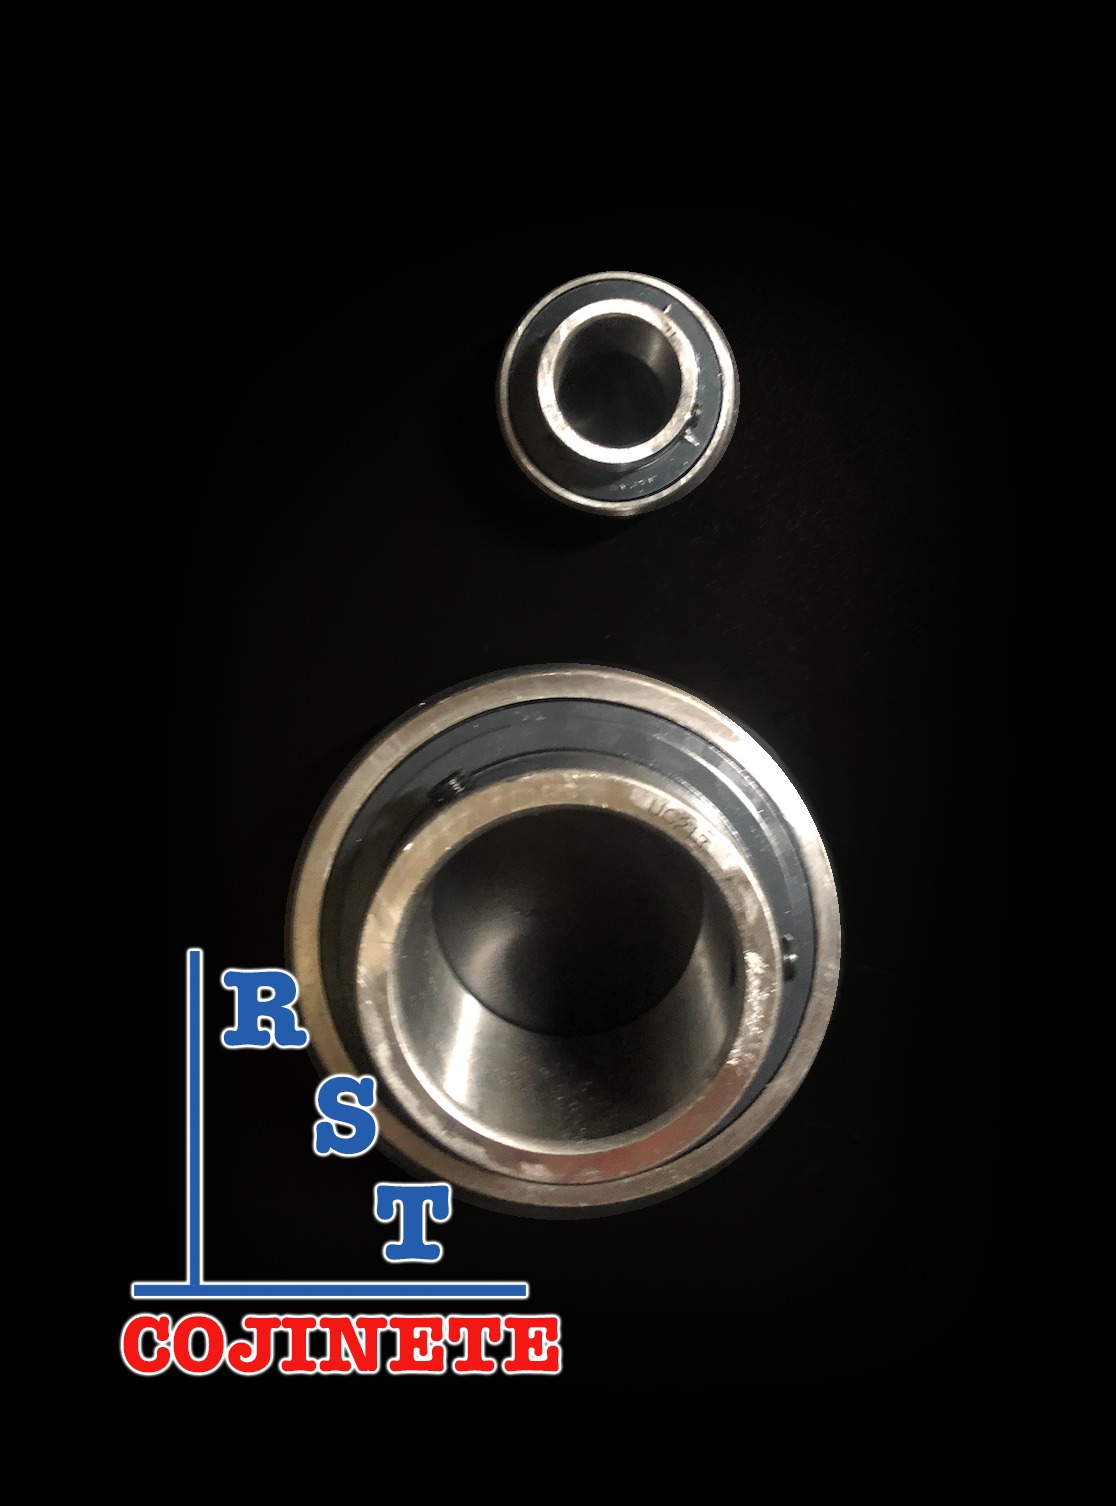 Cojinete insertable UC207-23 | Rodamiento para eje de 1-7/16" rígido de bolas con sello de hule para chumacera